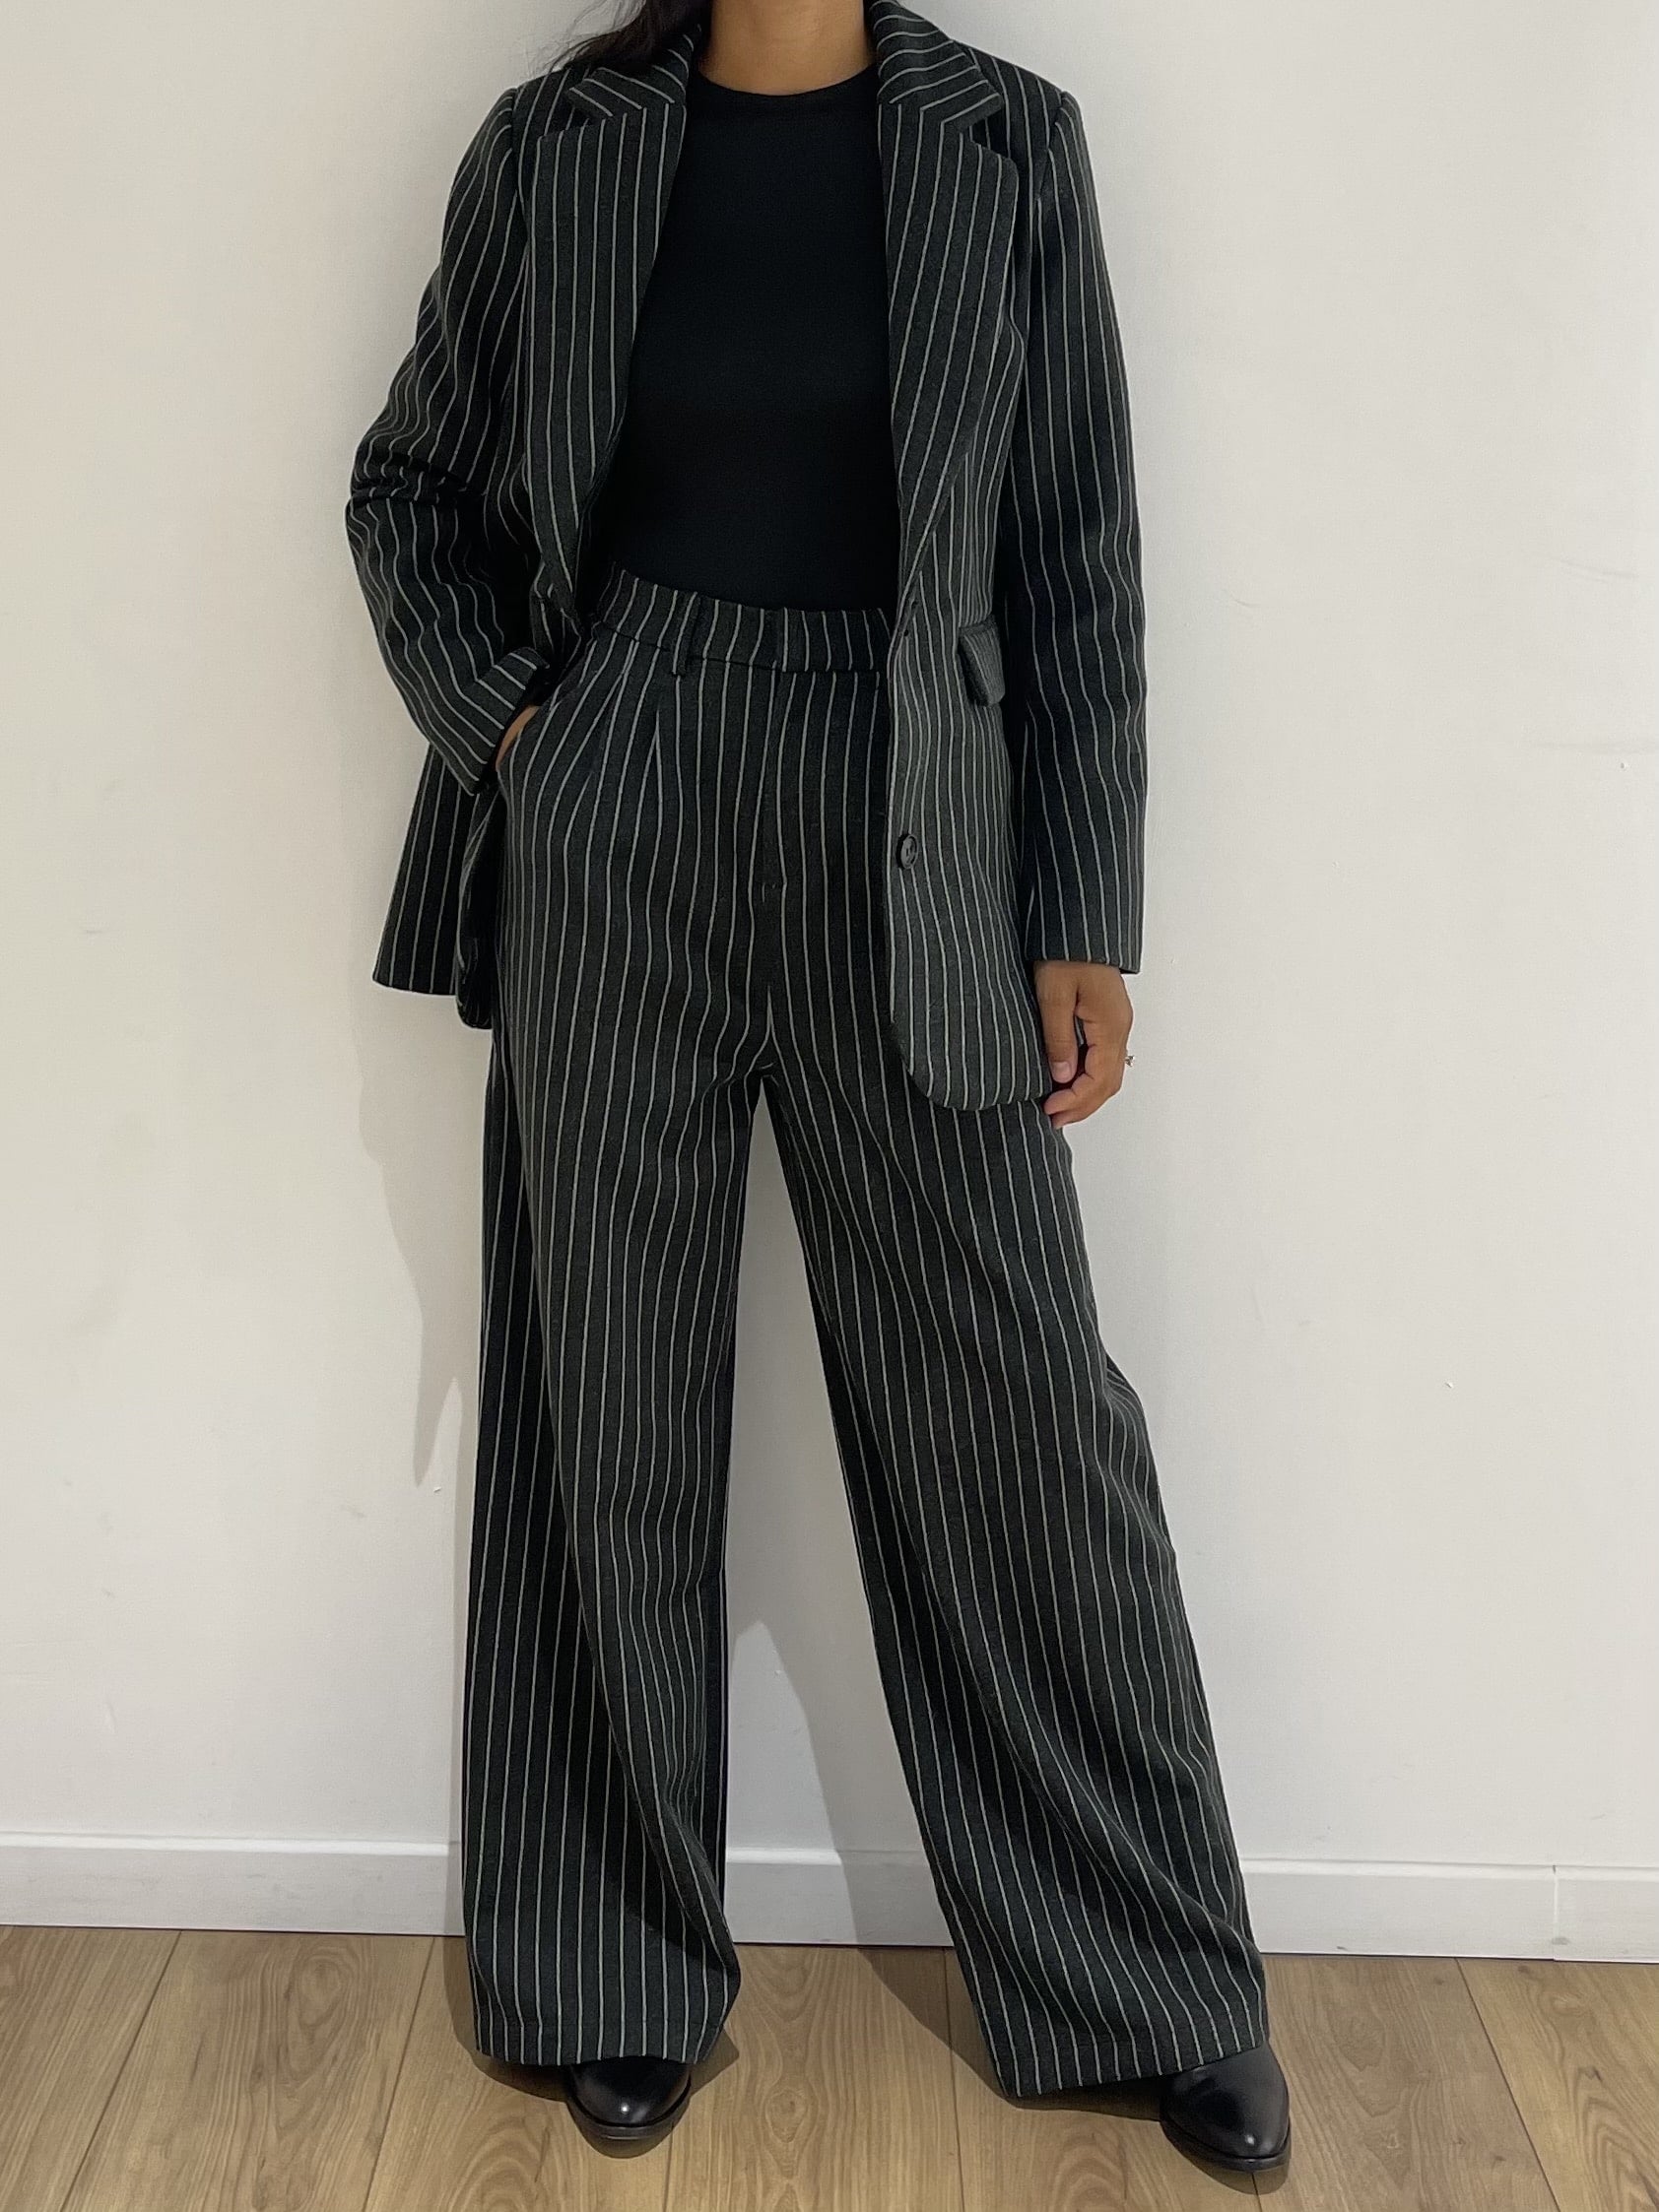 veste-tailleur-femme-rayures-verticales-noir-et-blanc-kataparis